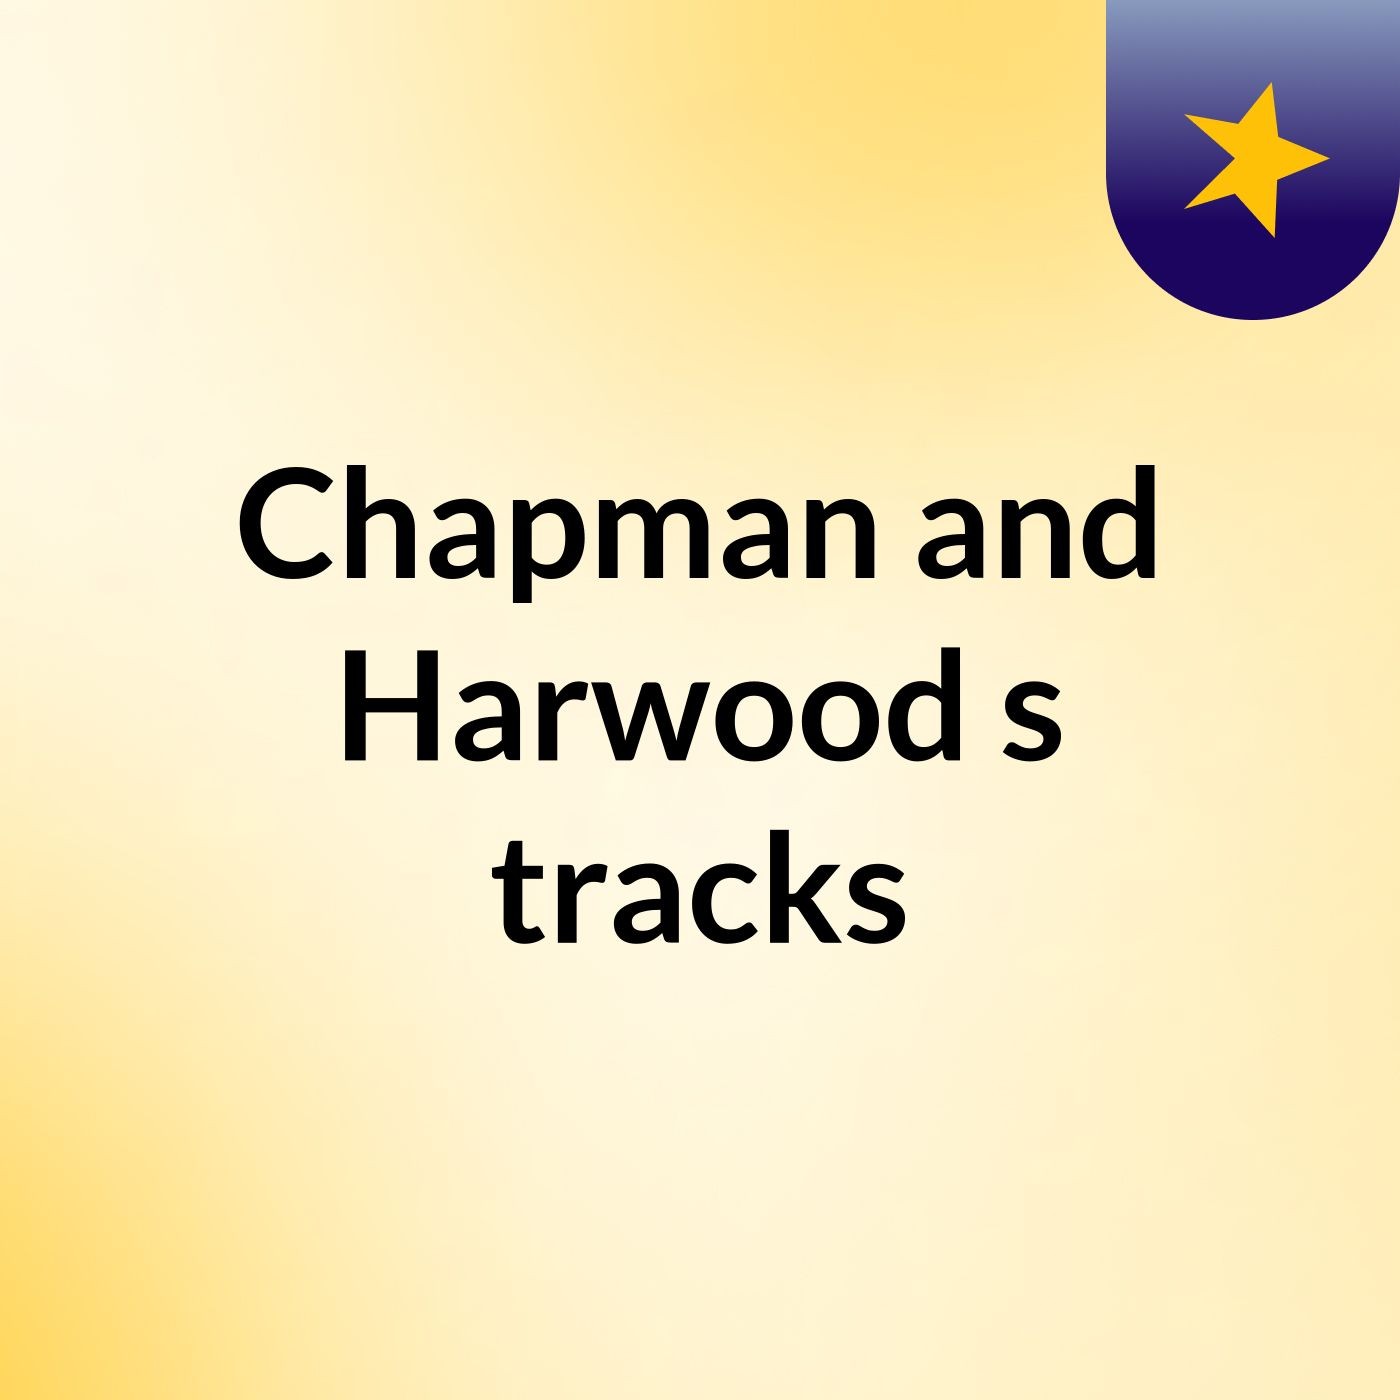 Chapman and Harwood's tracks